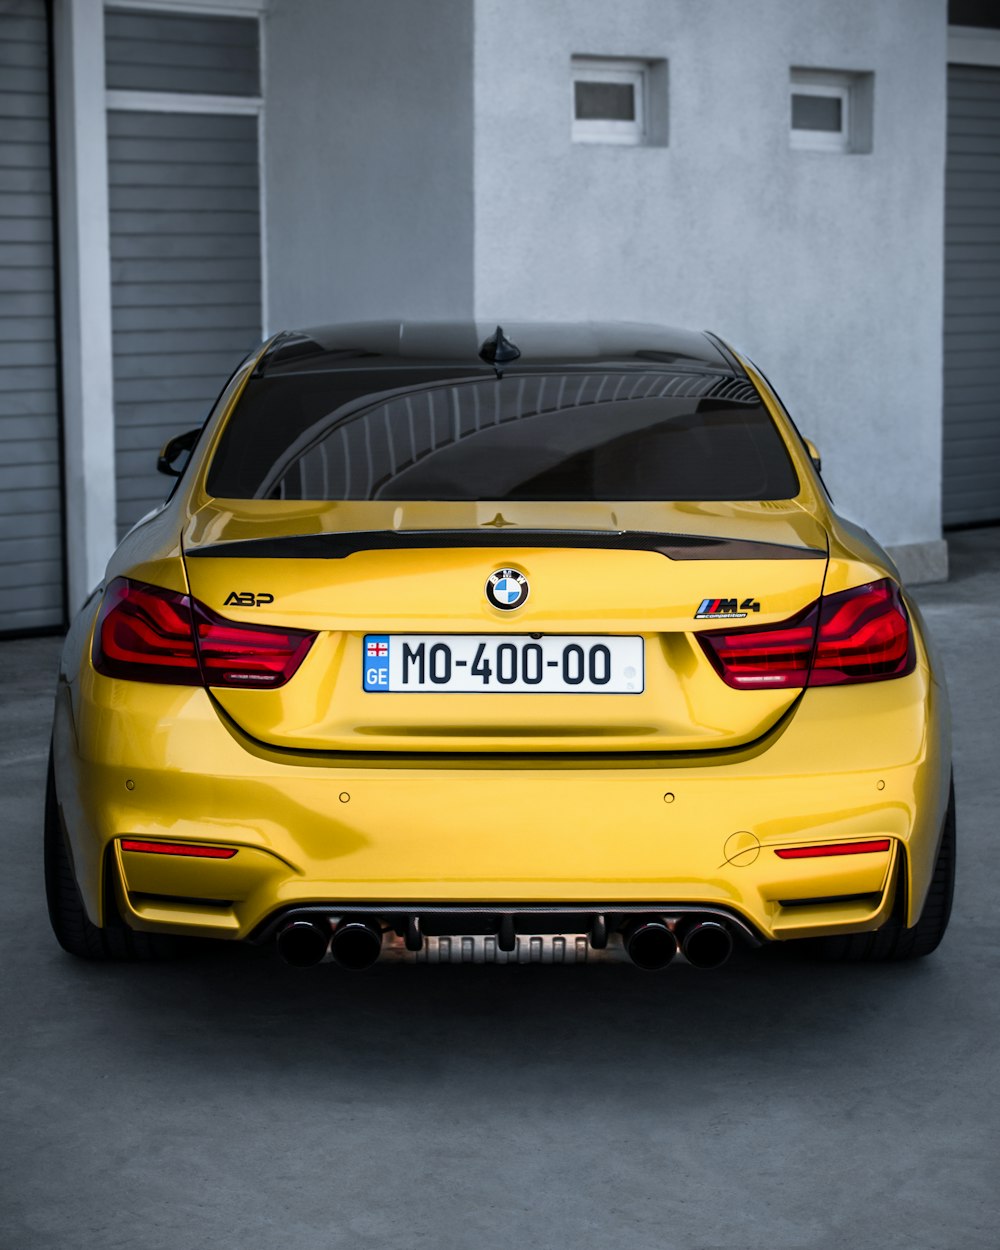 차고에 주차 된 노란색 BMW 자동차